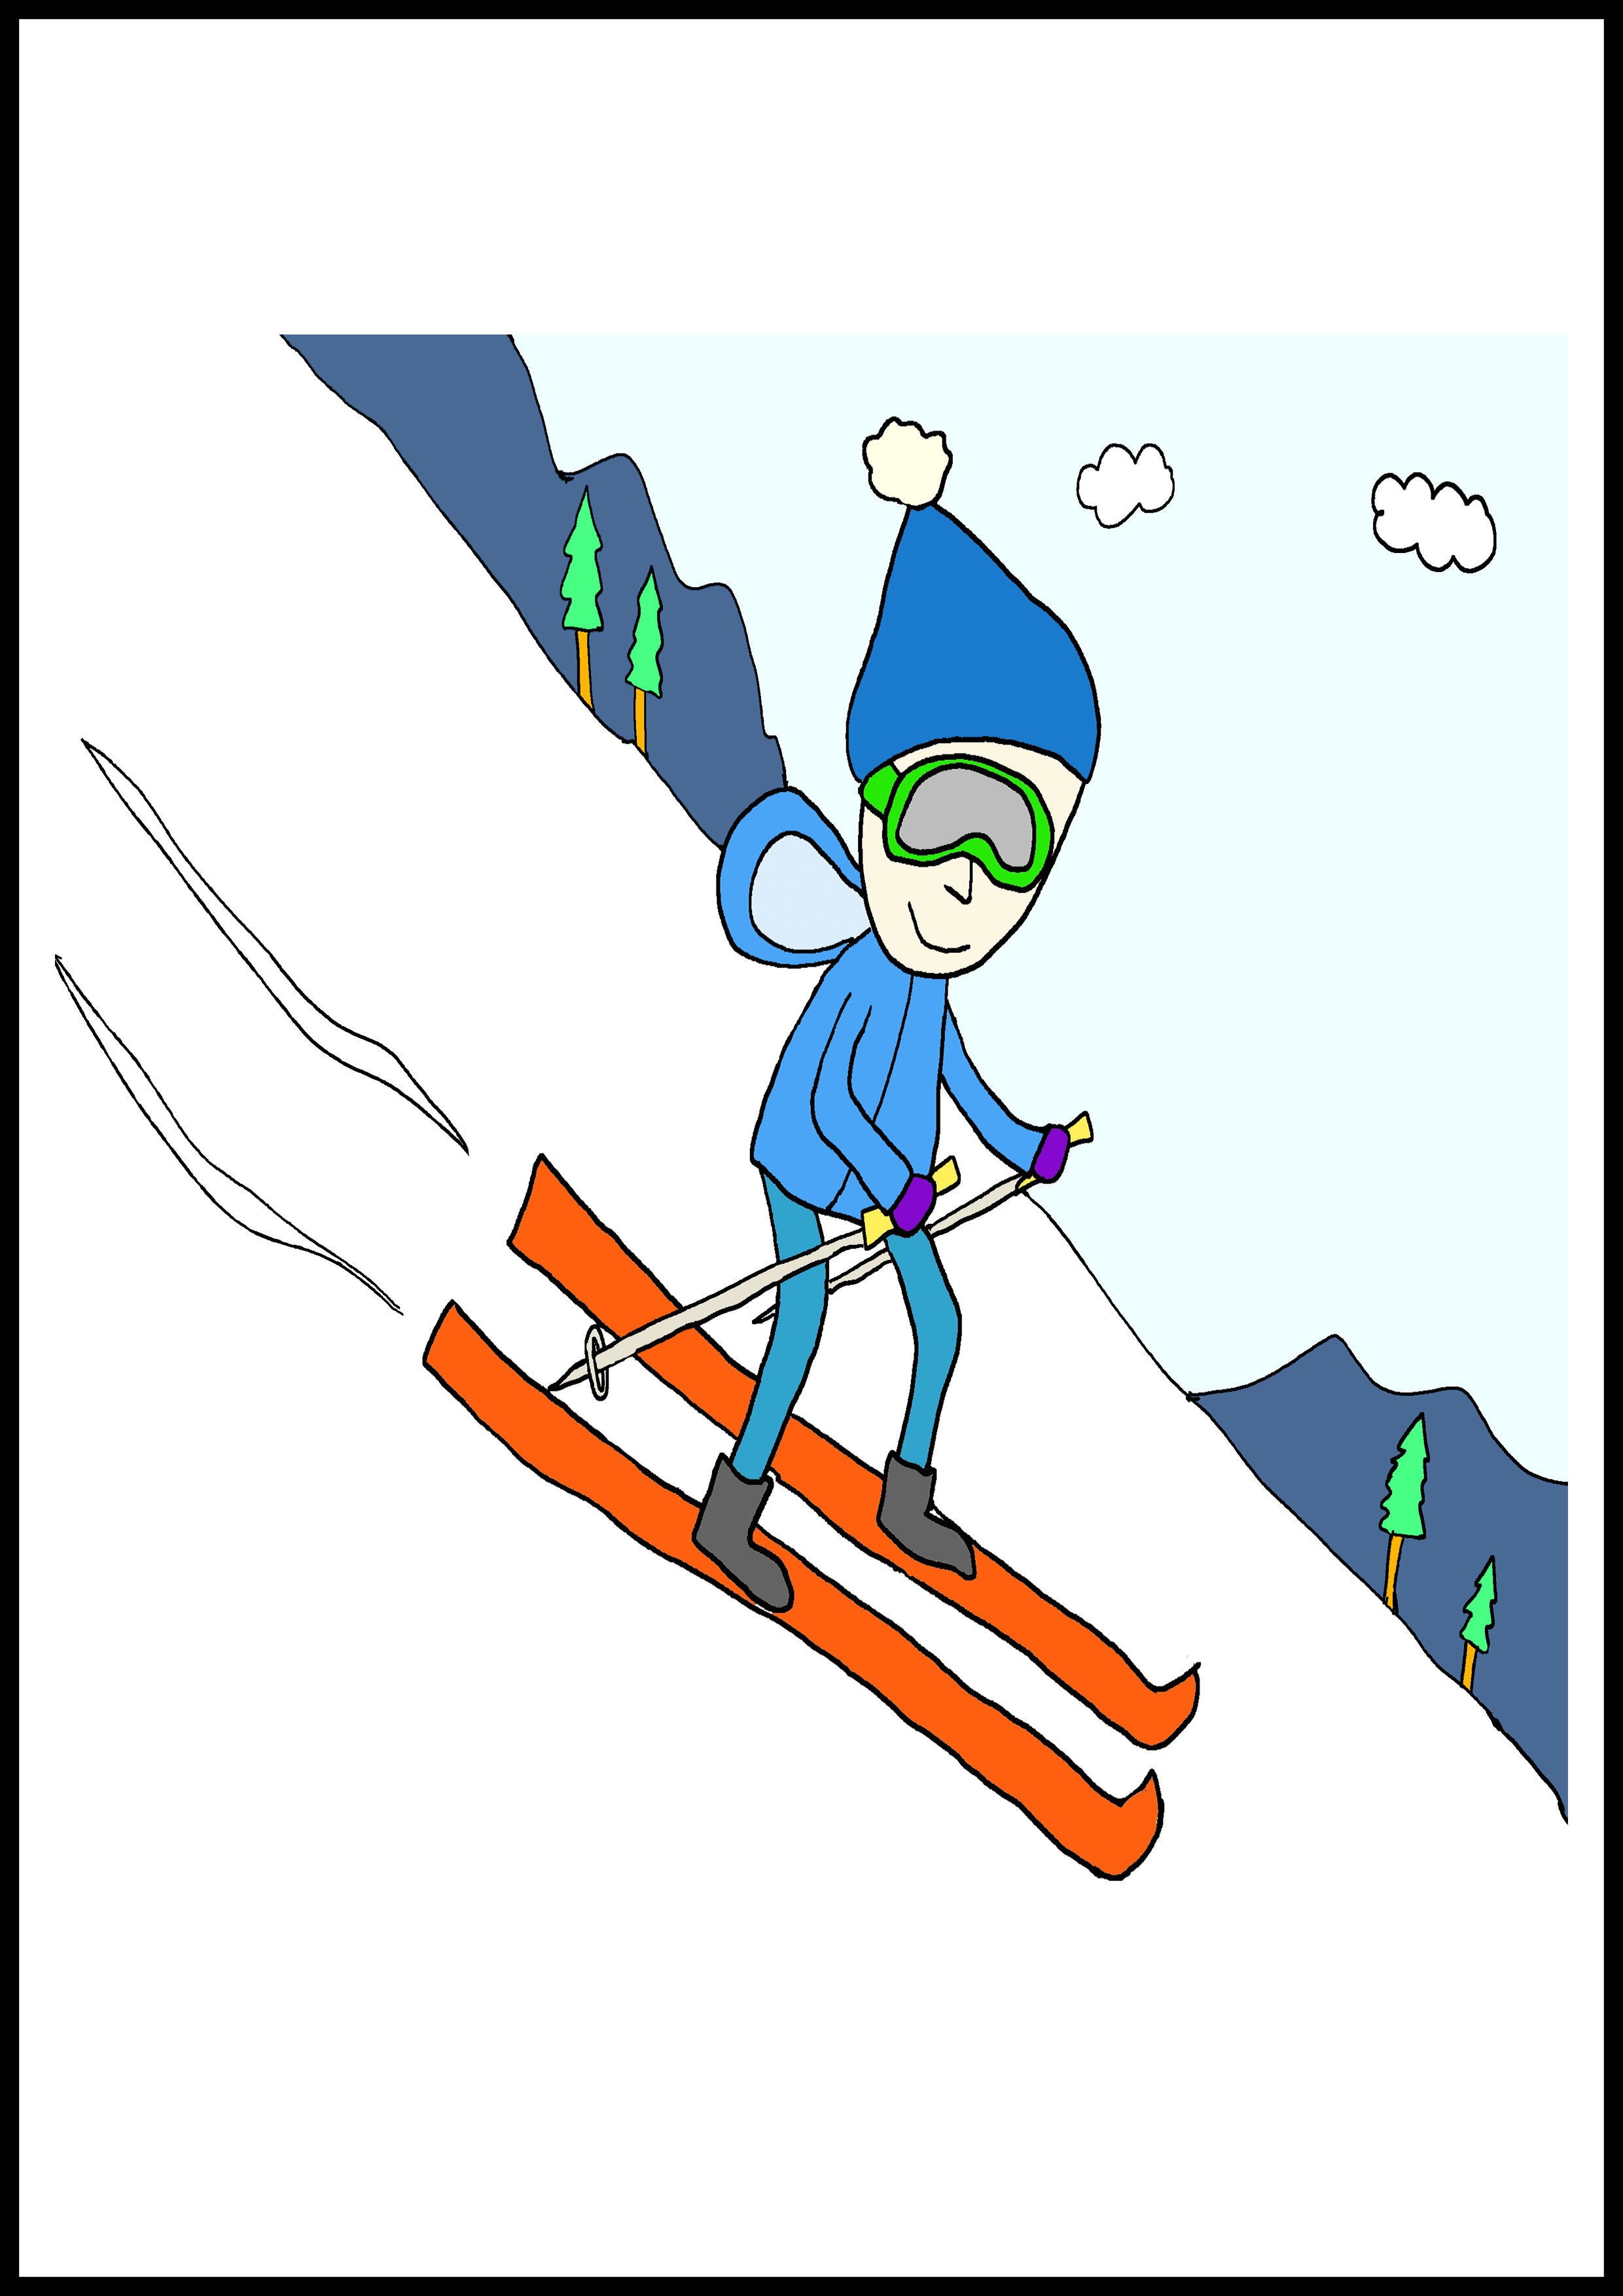 カルタイラスト【スキー】